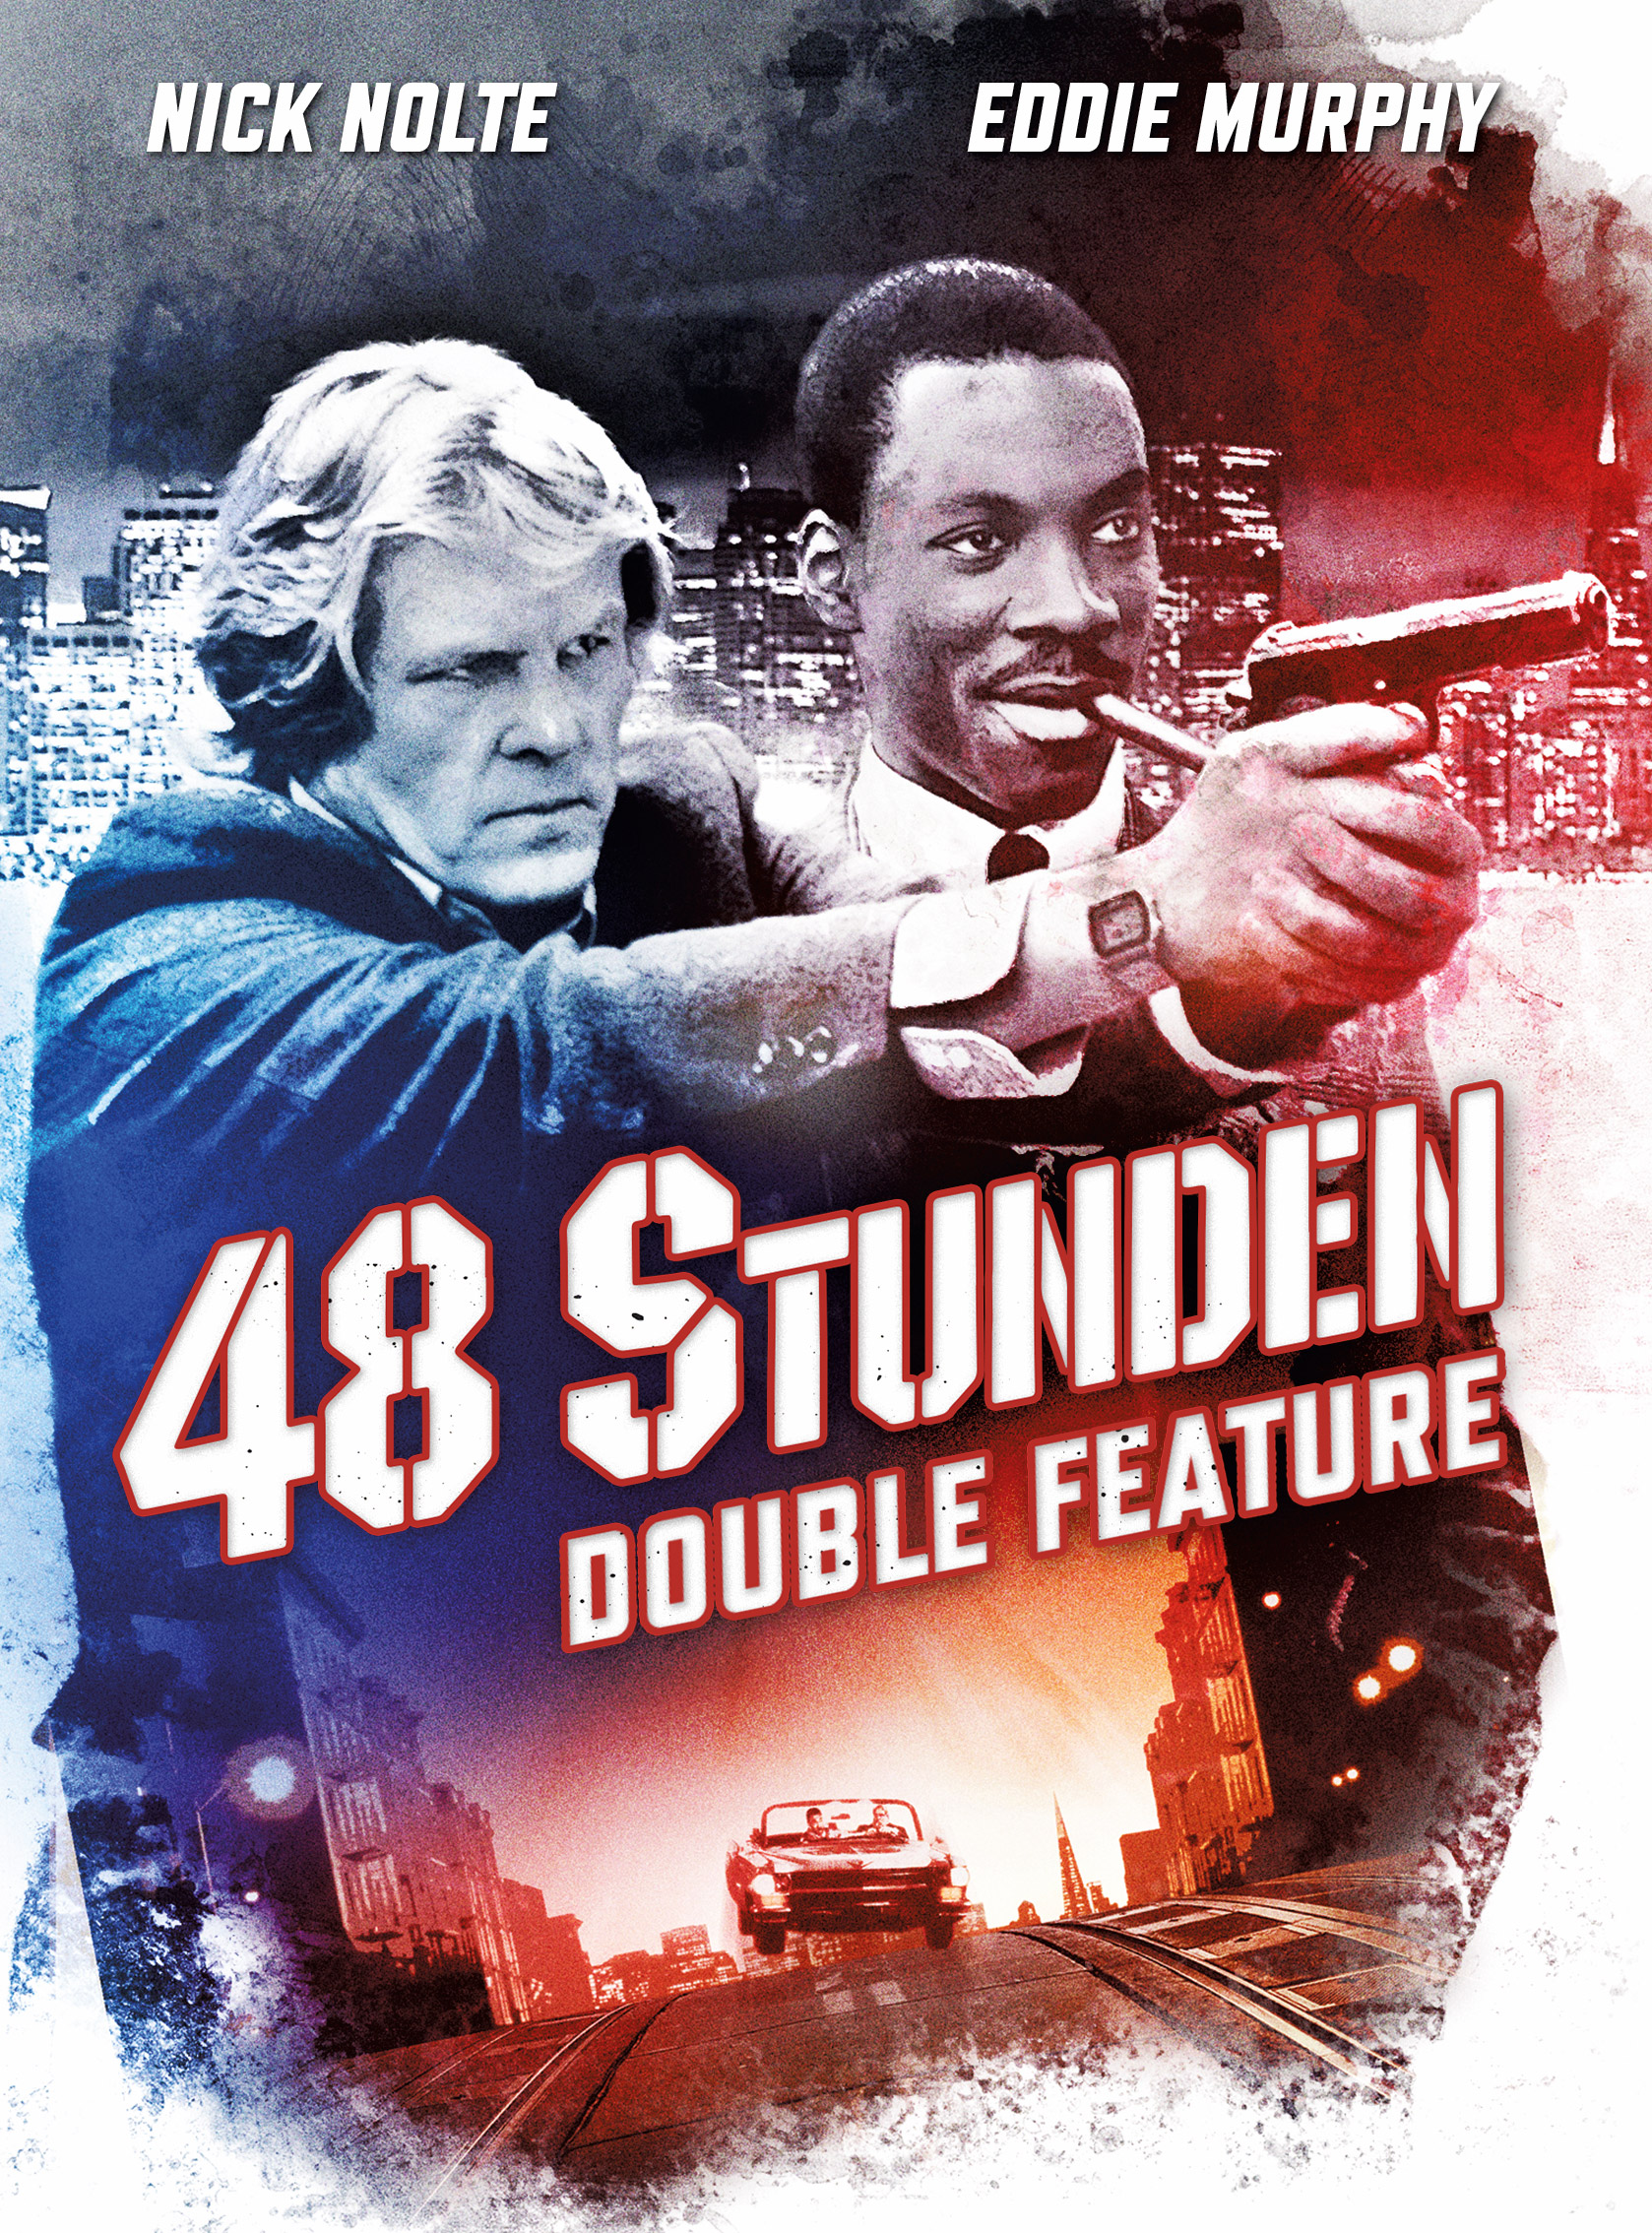 Das 48 STUNDEN Double Feature ab 26. August im limitierten Blu-ray Doppelpack als hochwertiges Mediabook!